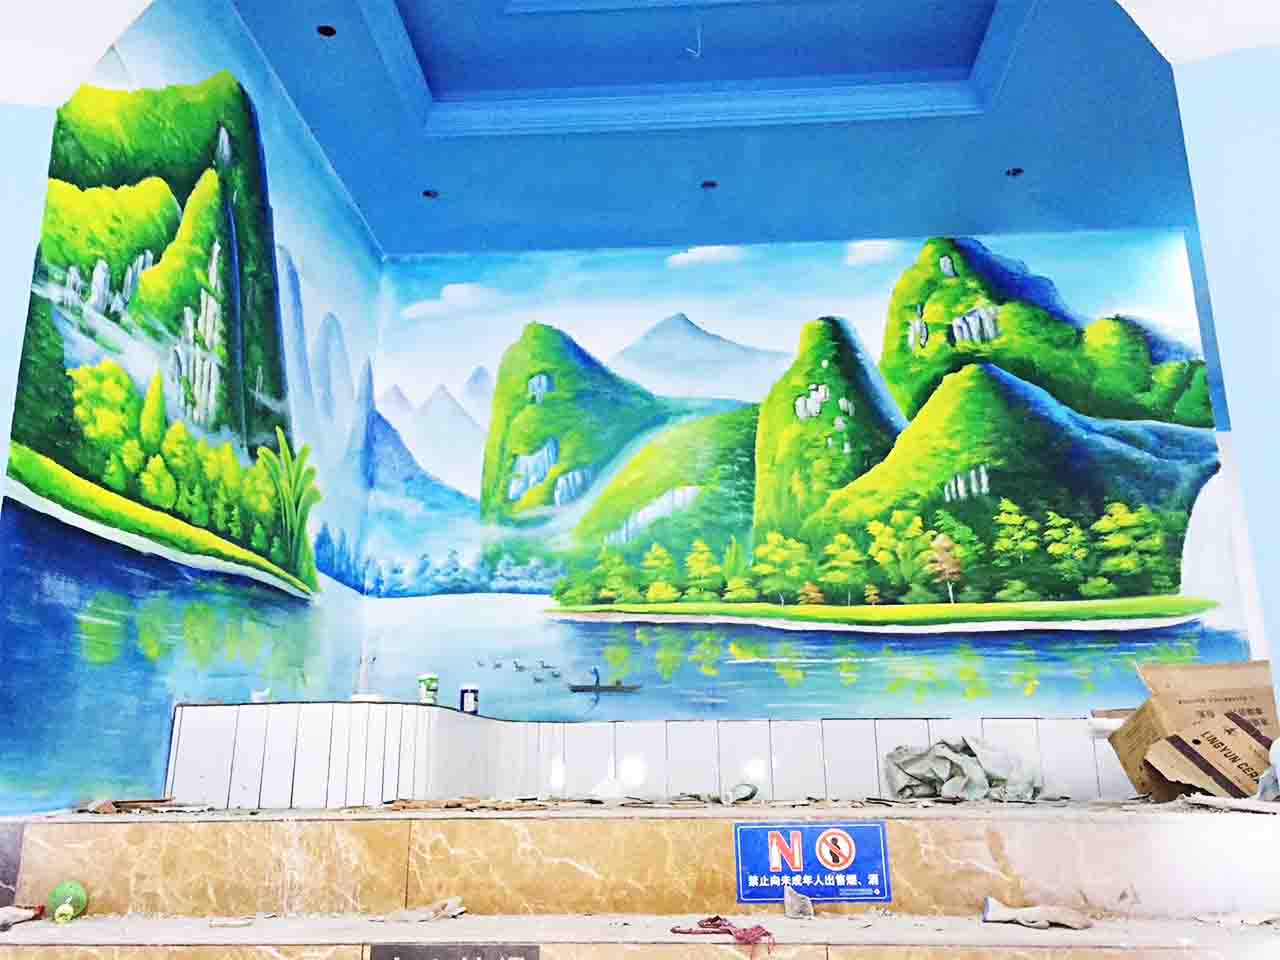 幼儿校园动物园游乐场卡通风景墙绘壁画彩绘涂鸦手绘成都澜泉文化